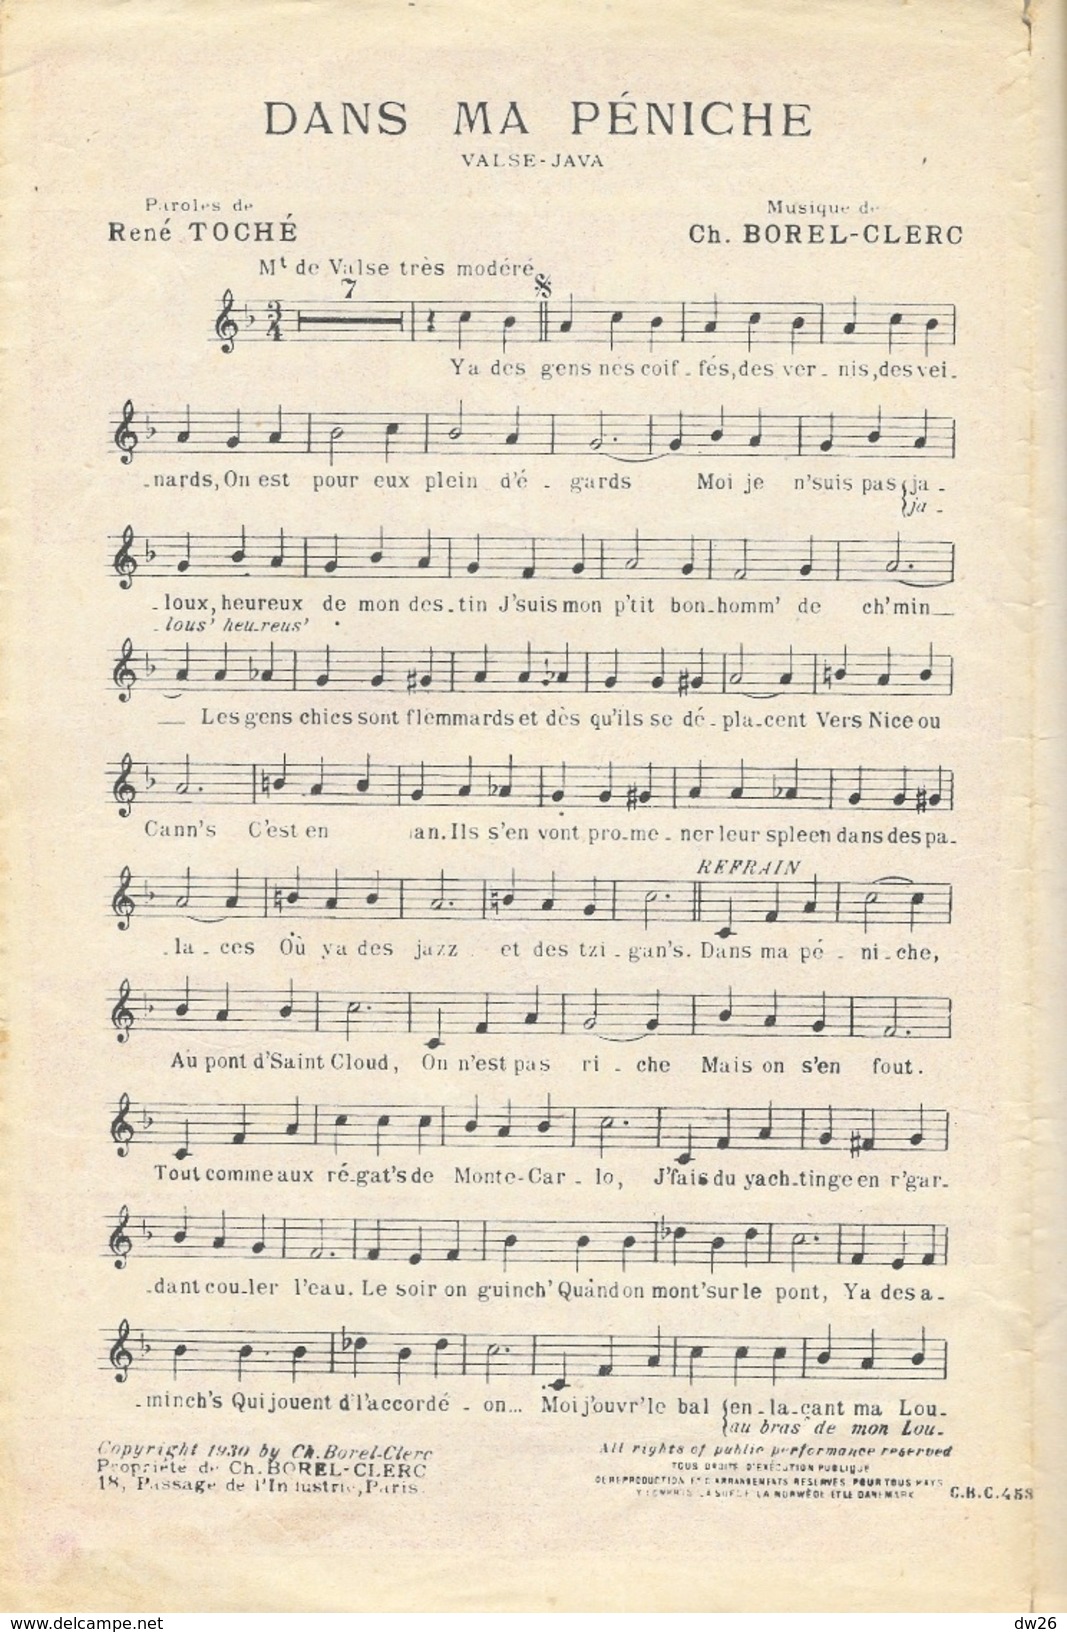 Partition: Dans Ma Péniche (Valse Java), Grand Succès De Jean Cyrano - Paroles De René Toche - Musique Ch. Borel-Clerc - Partituren